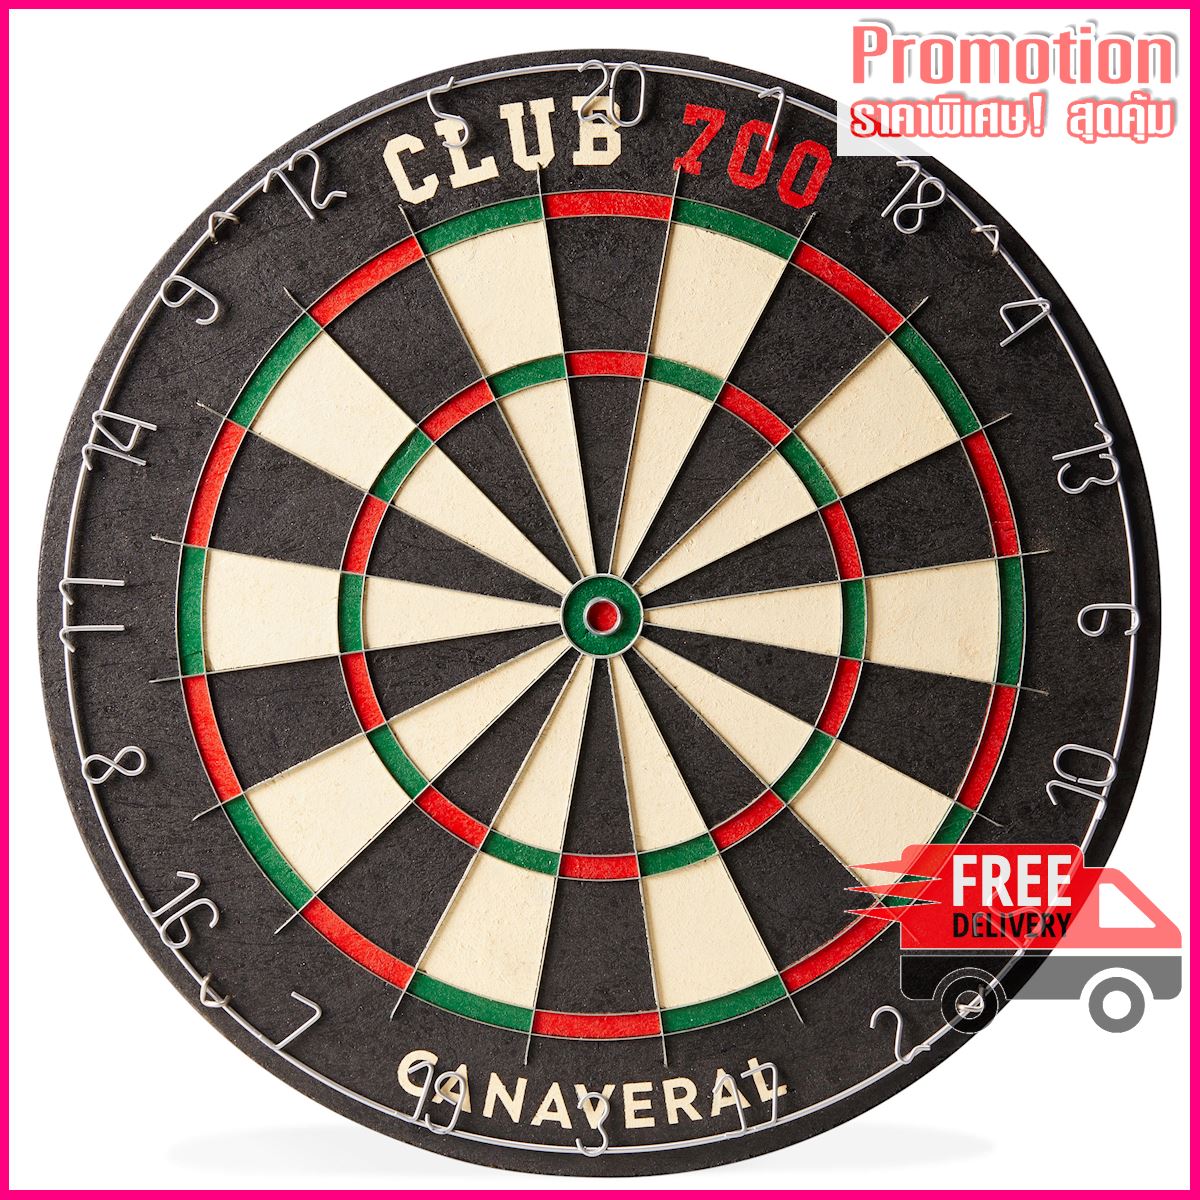 Club 700 Traditional Dartboard